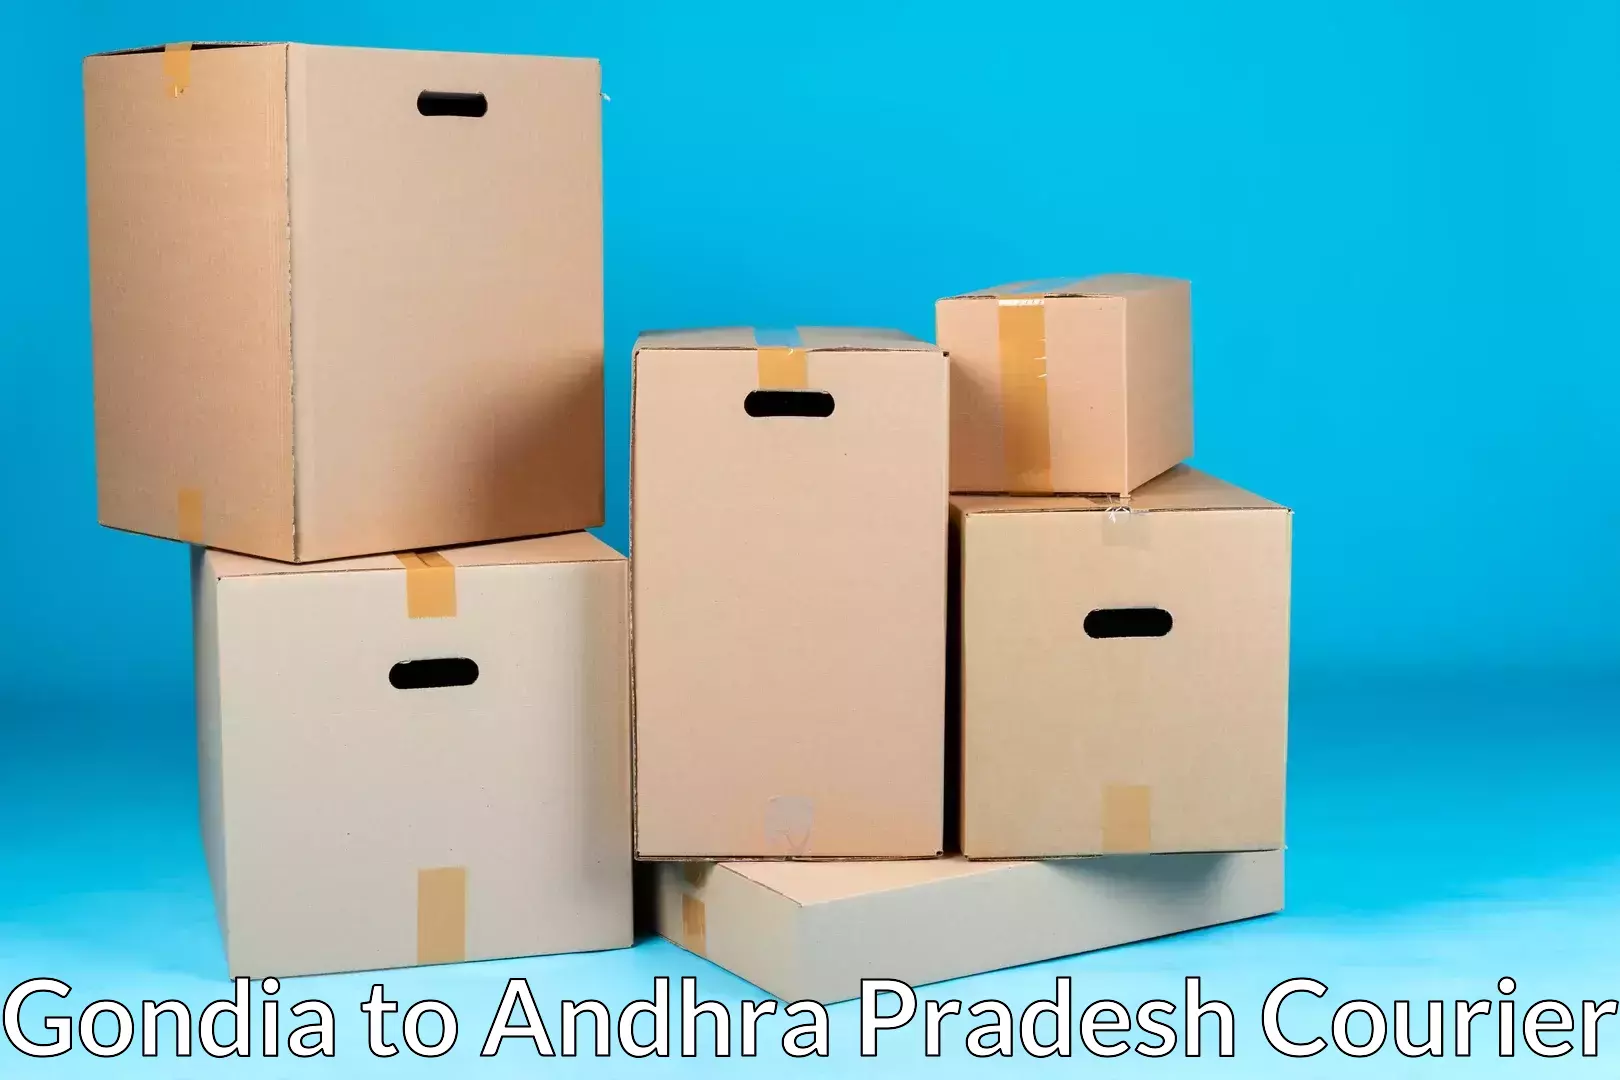 Furniture relocation experts Gondia to Cumbum Prakasam